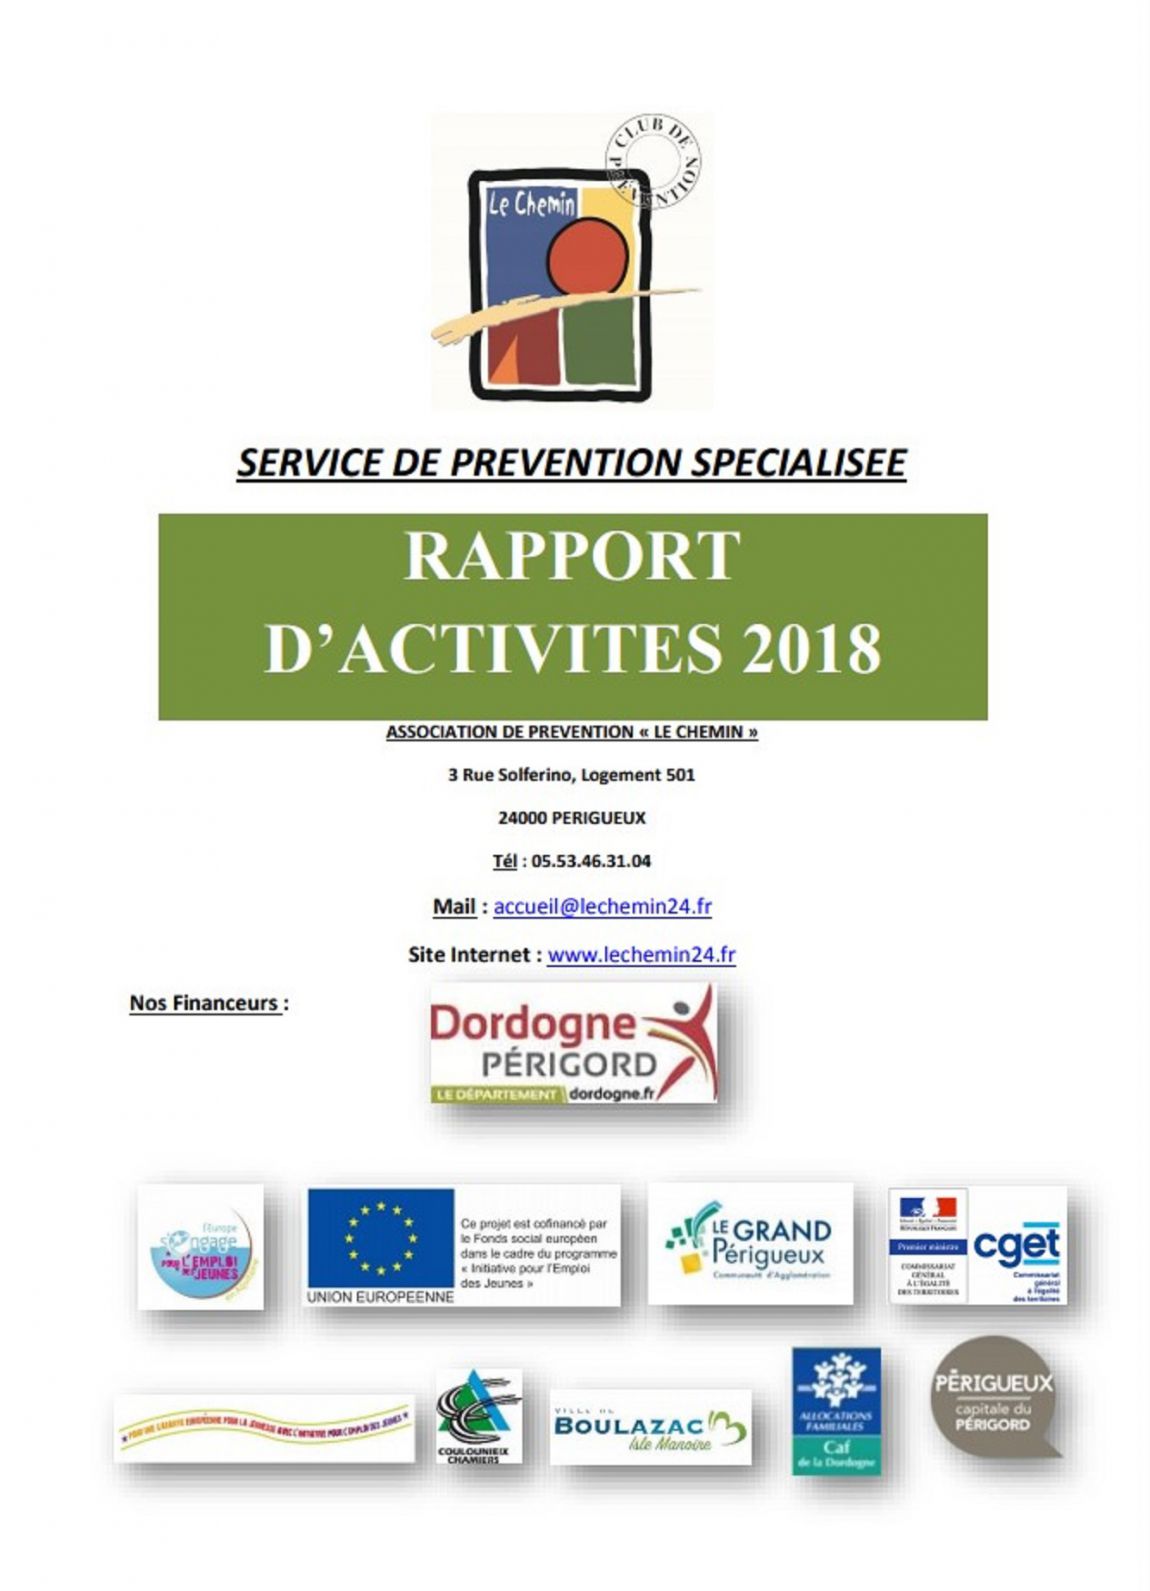 Image rapport dactivités 2018